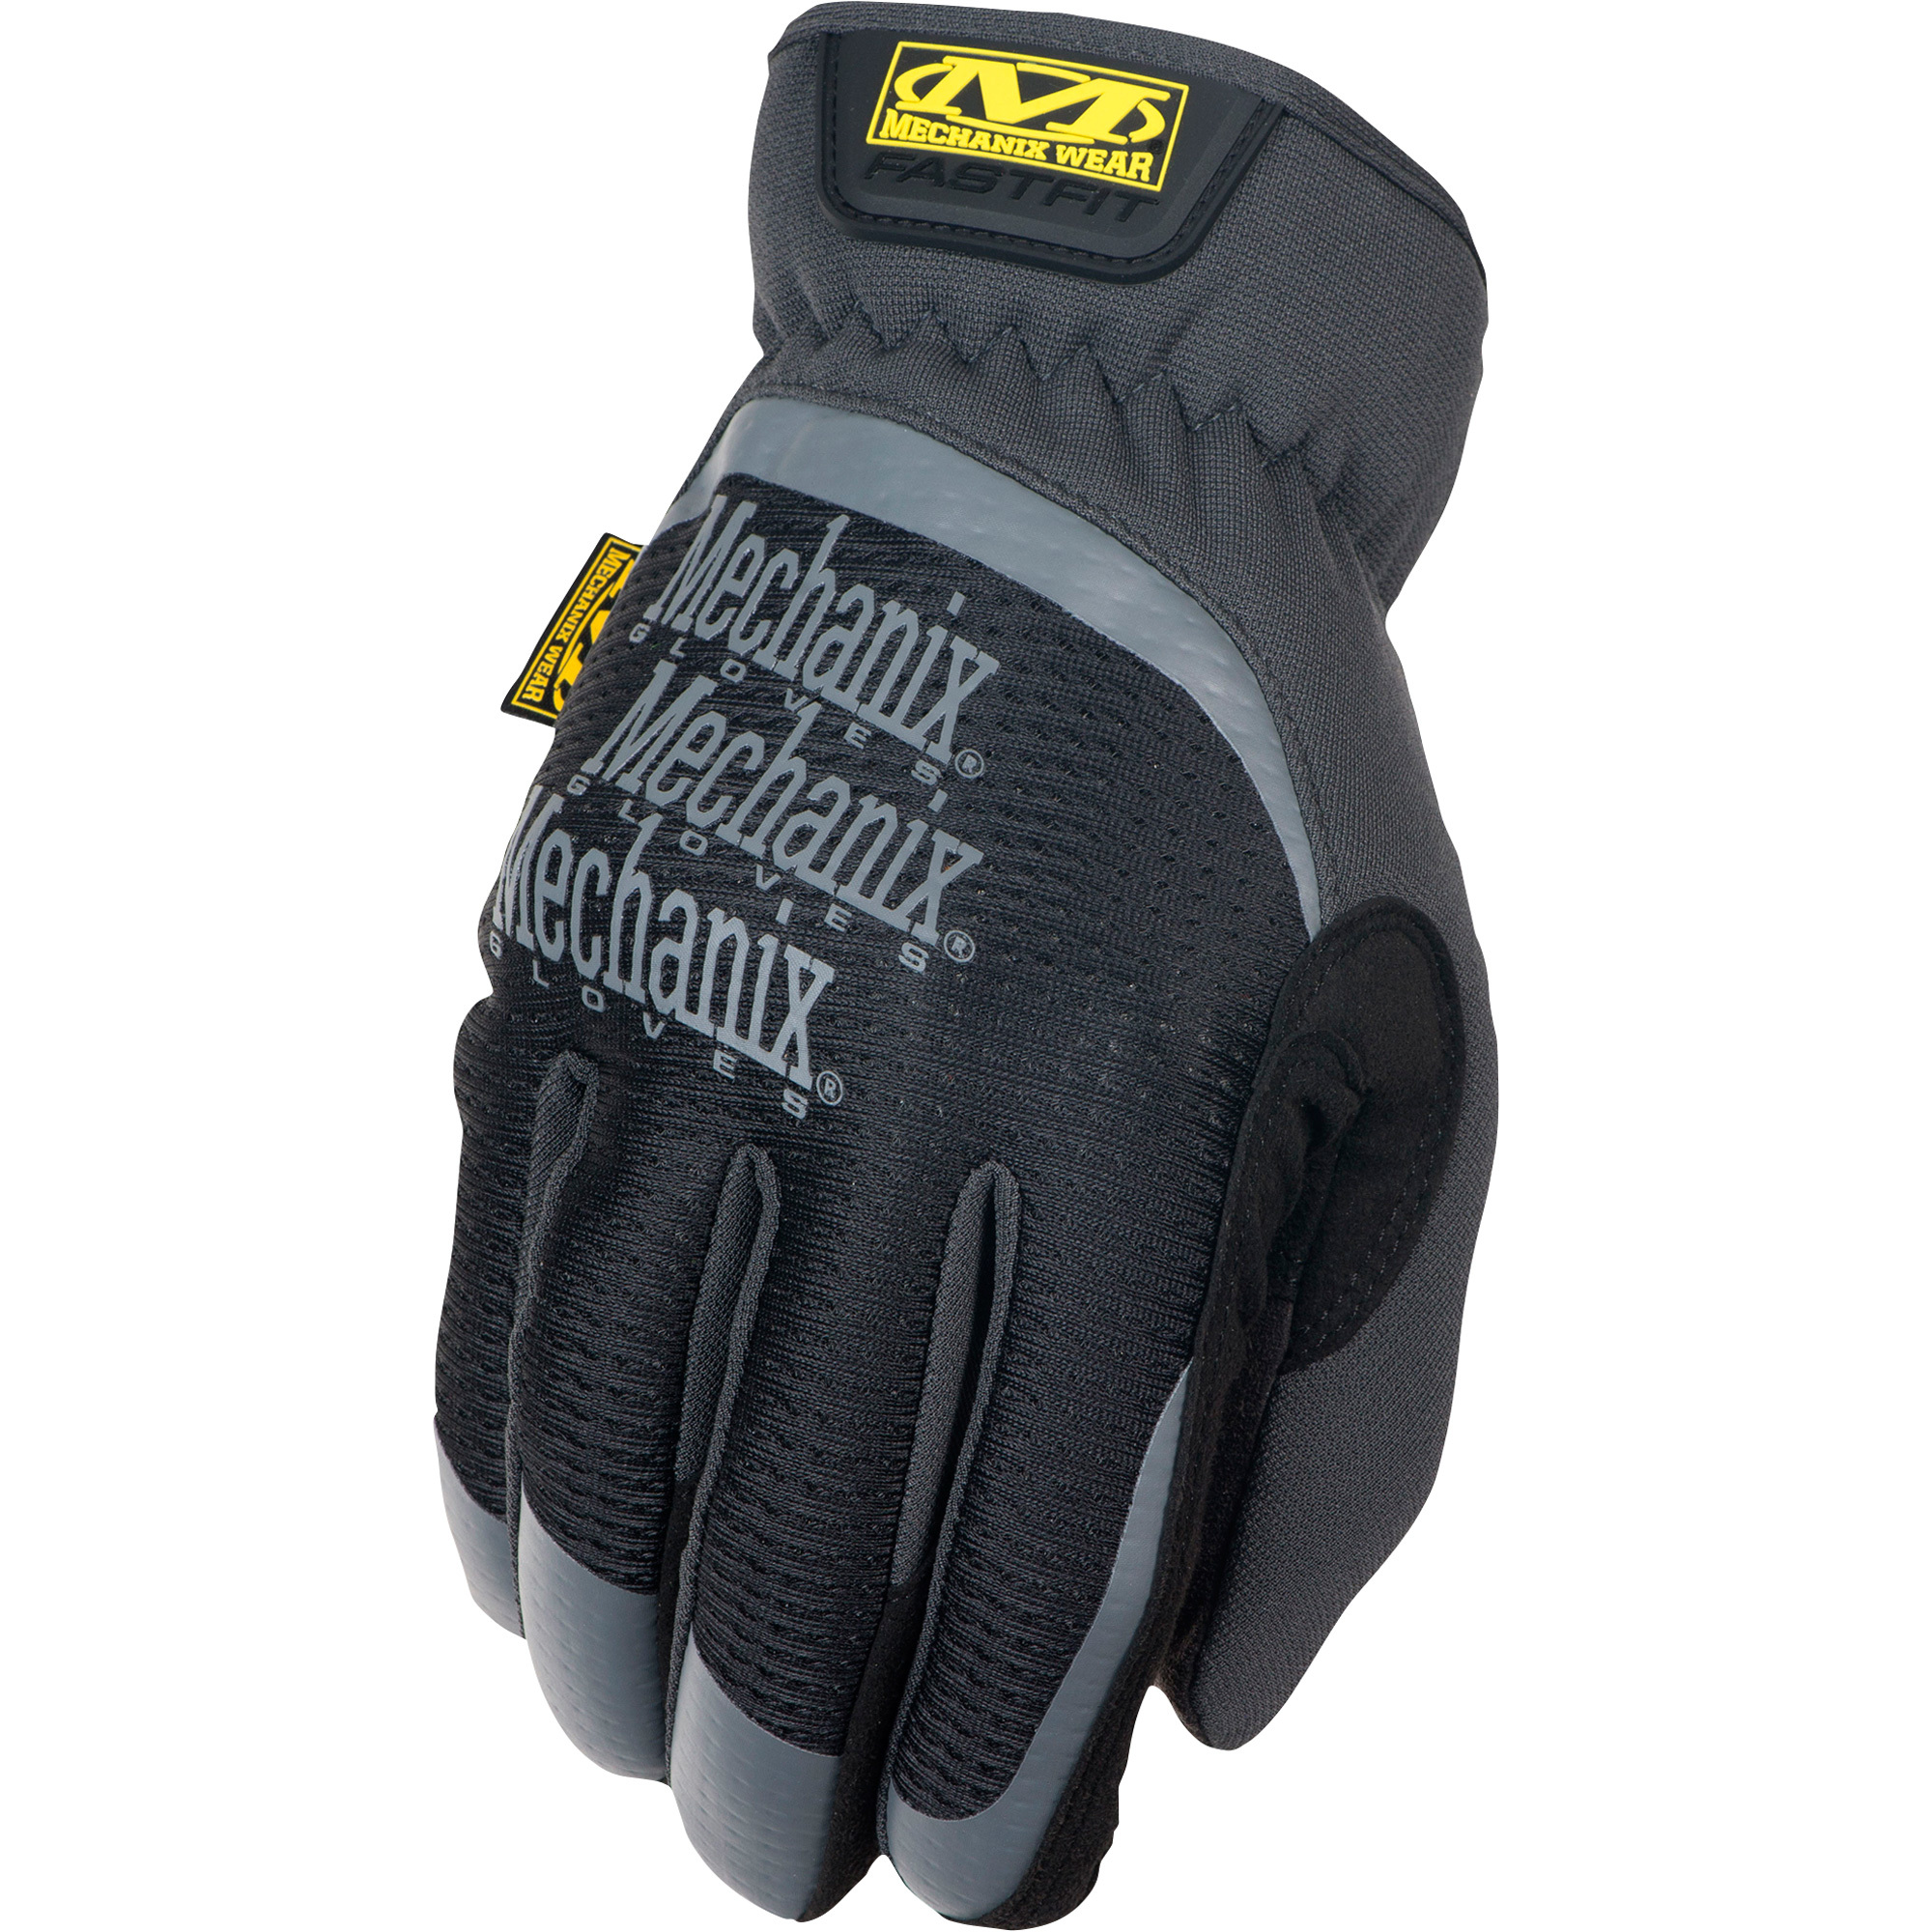 Mechanix Men's Wear FastFit Gloves - Black, X-Large, Model MFF-05-011